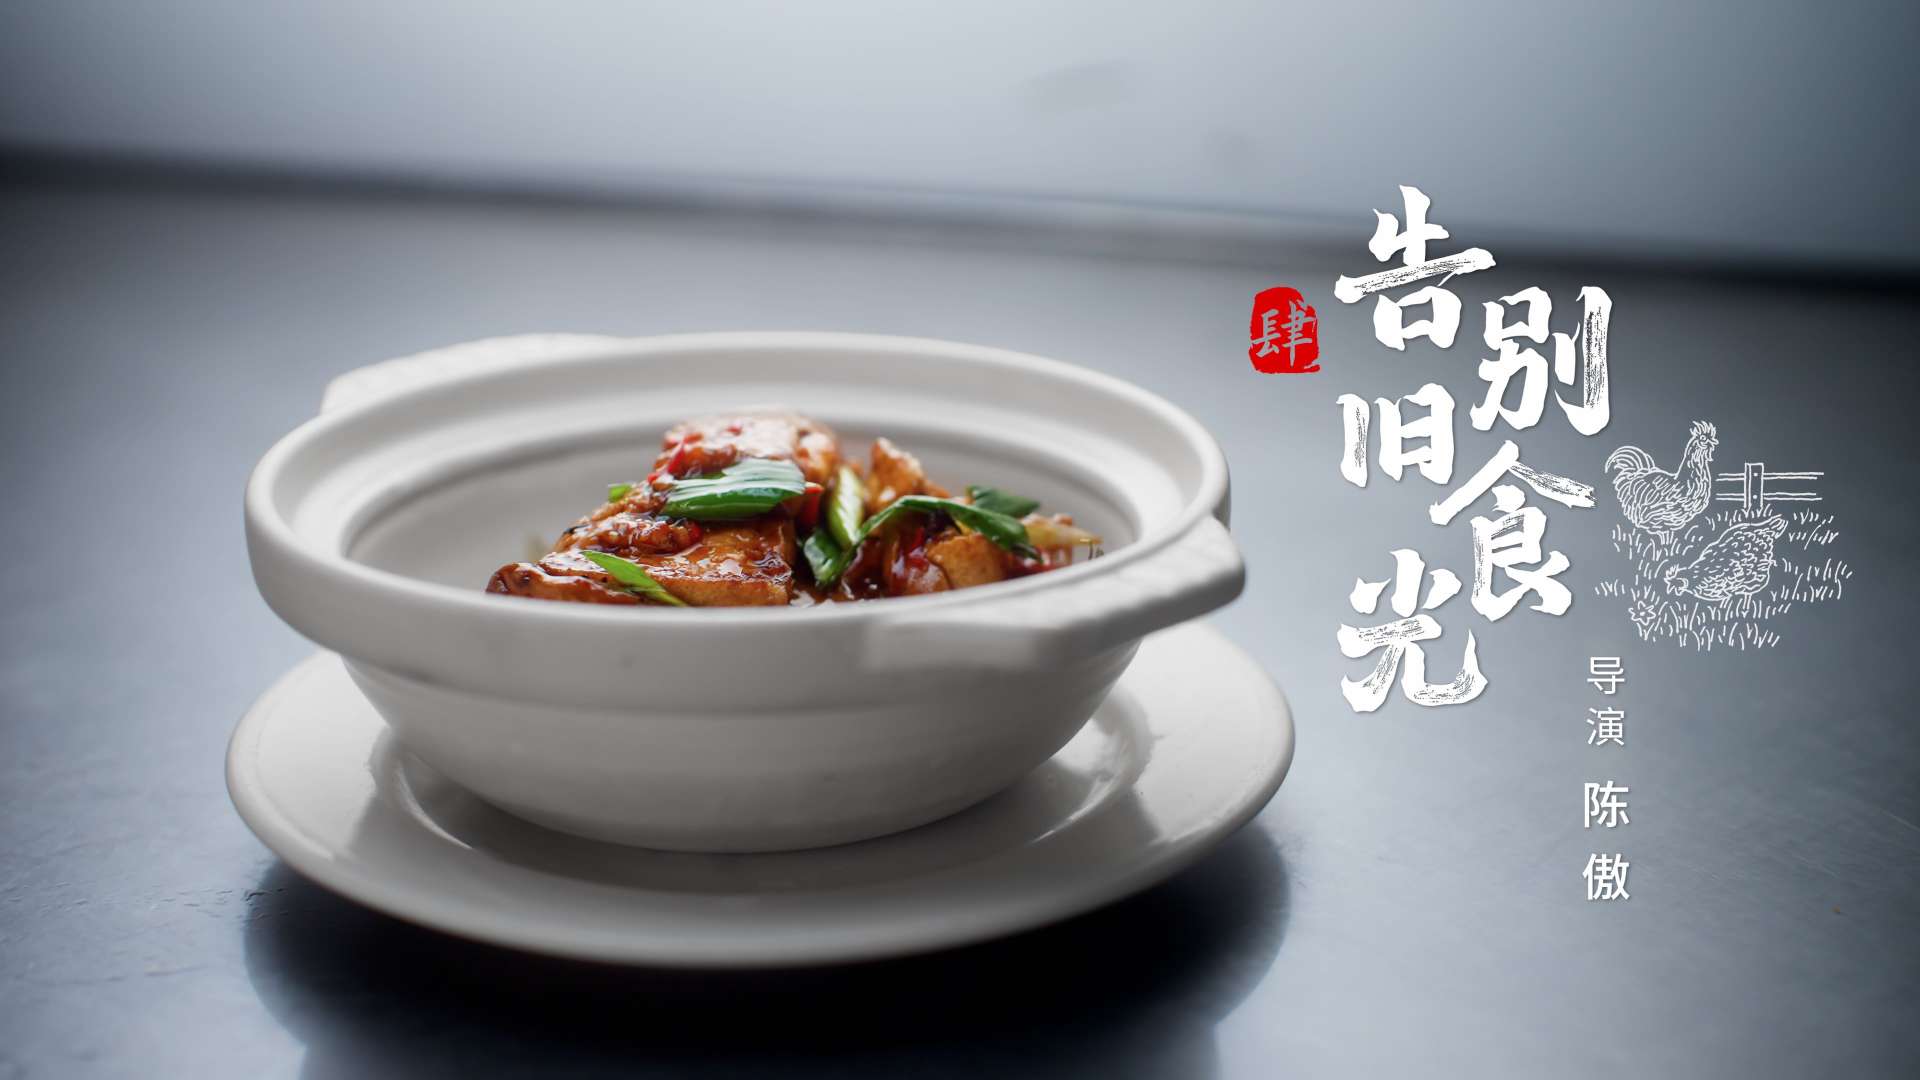 美食纪录片「傲椒的湘菜」第3季第4集 | 告别旧食光